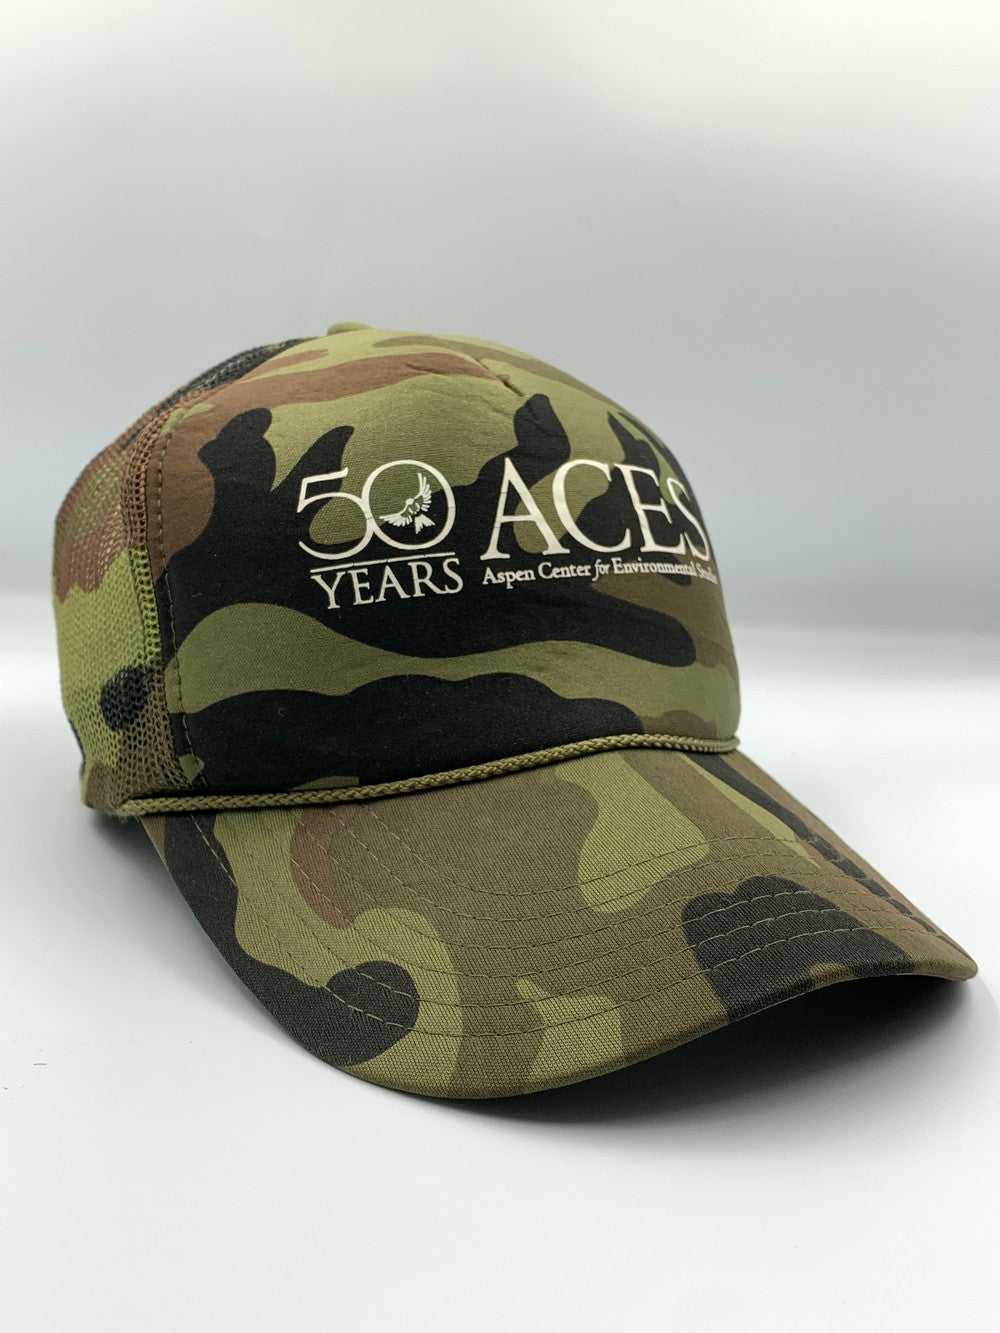 Aces Branded Original Branded Caps For Men